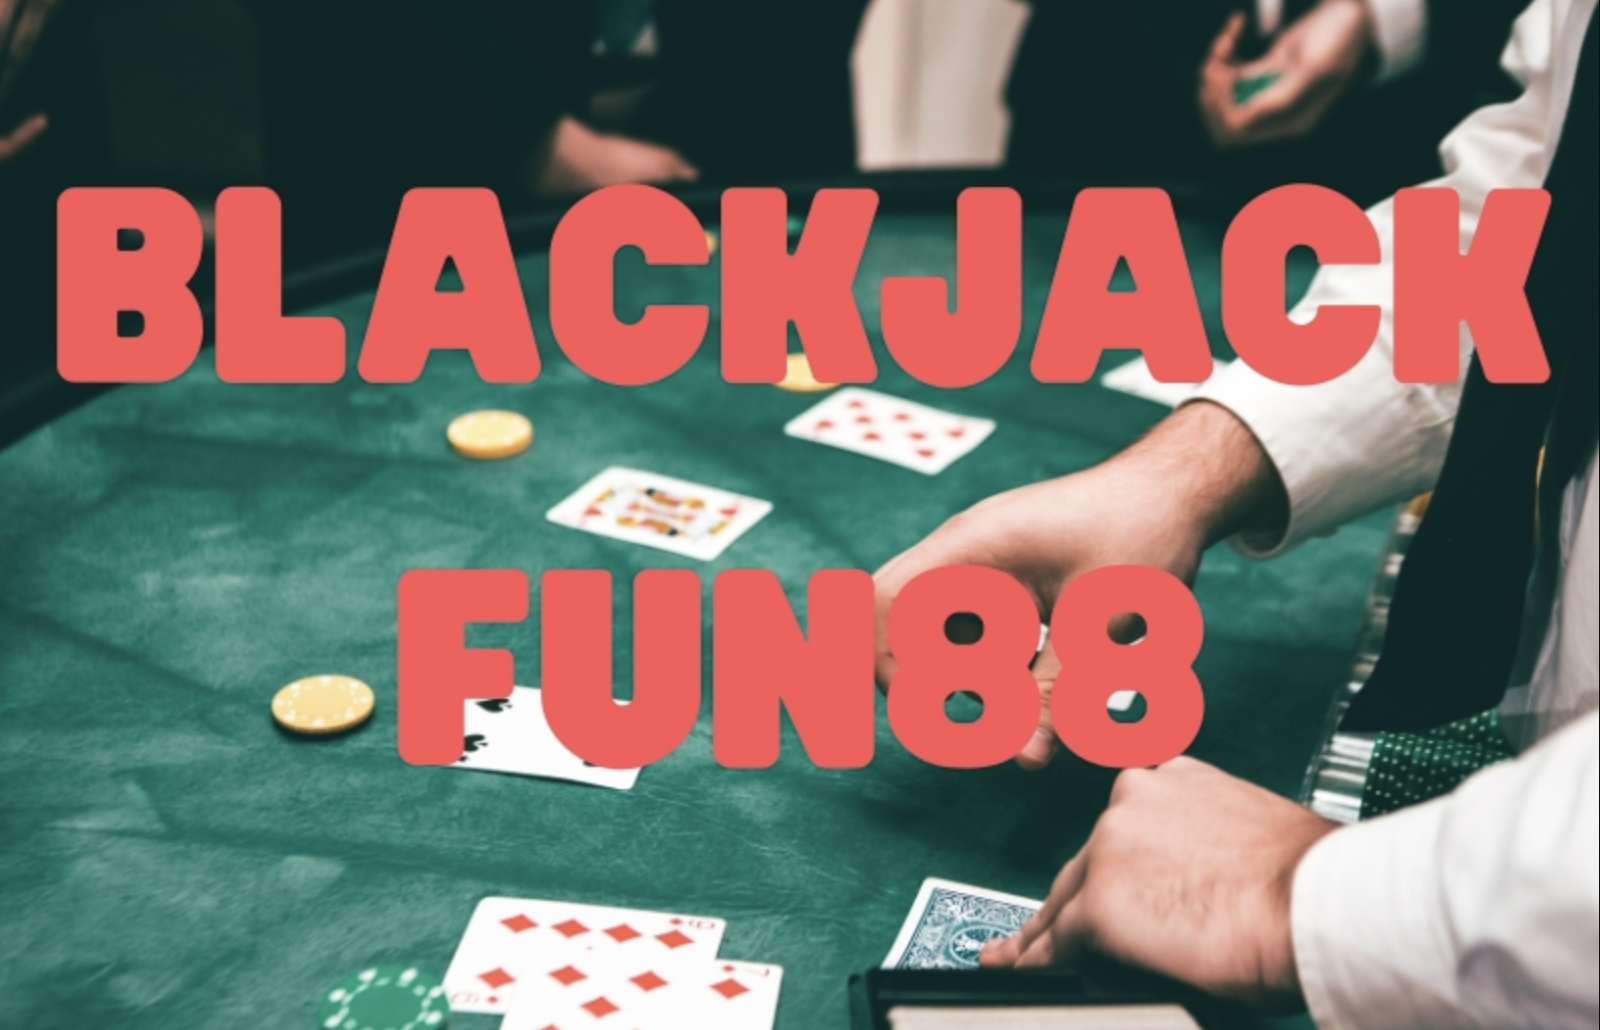 blackjack Fun88